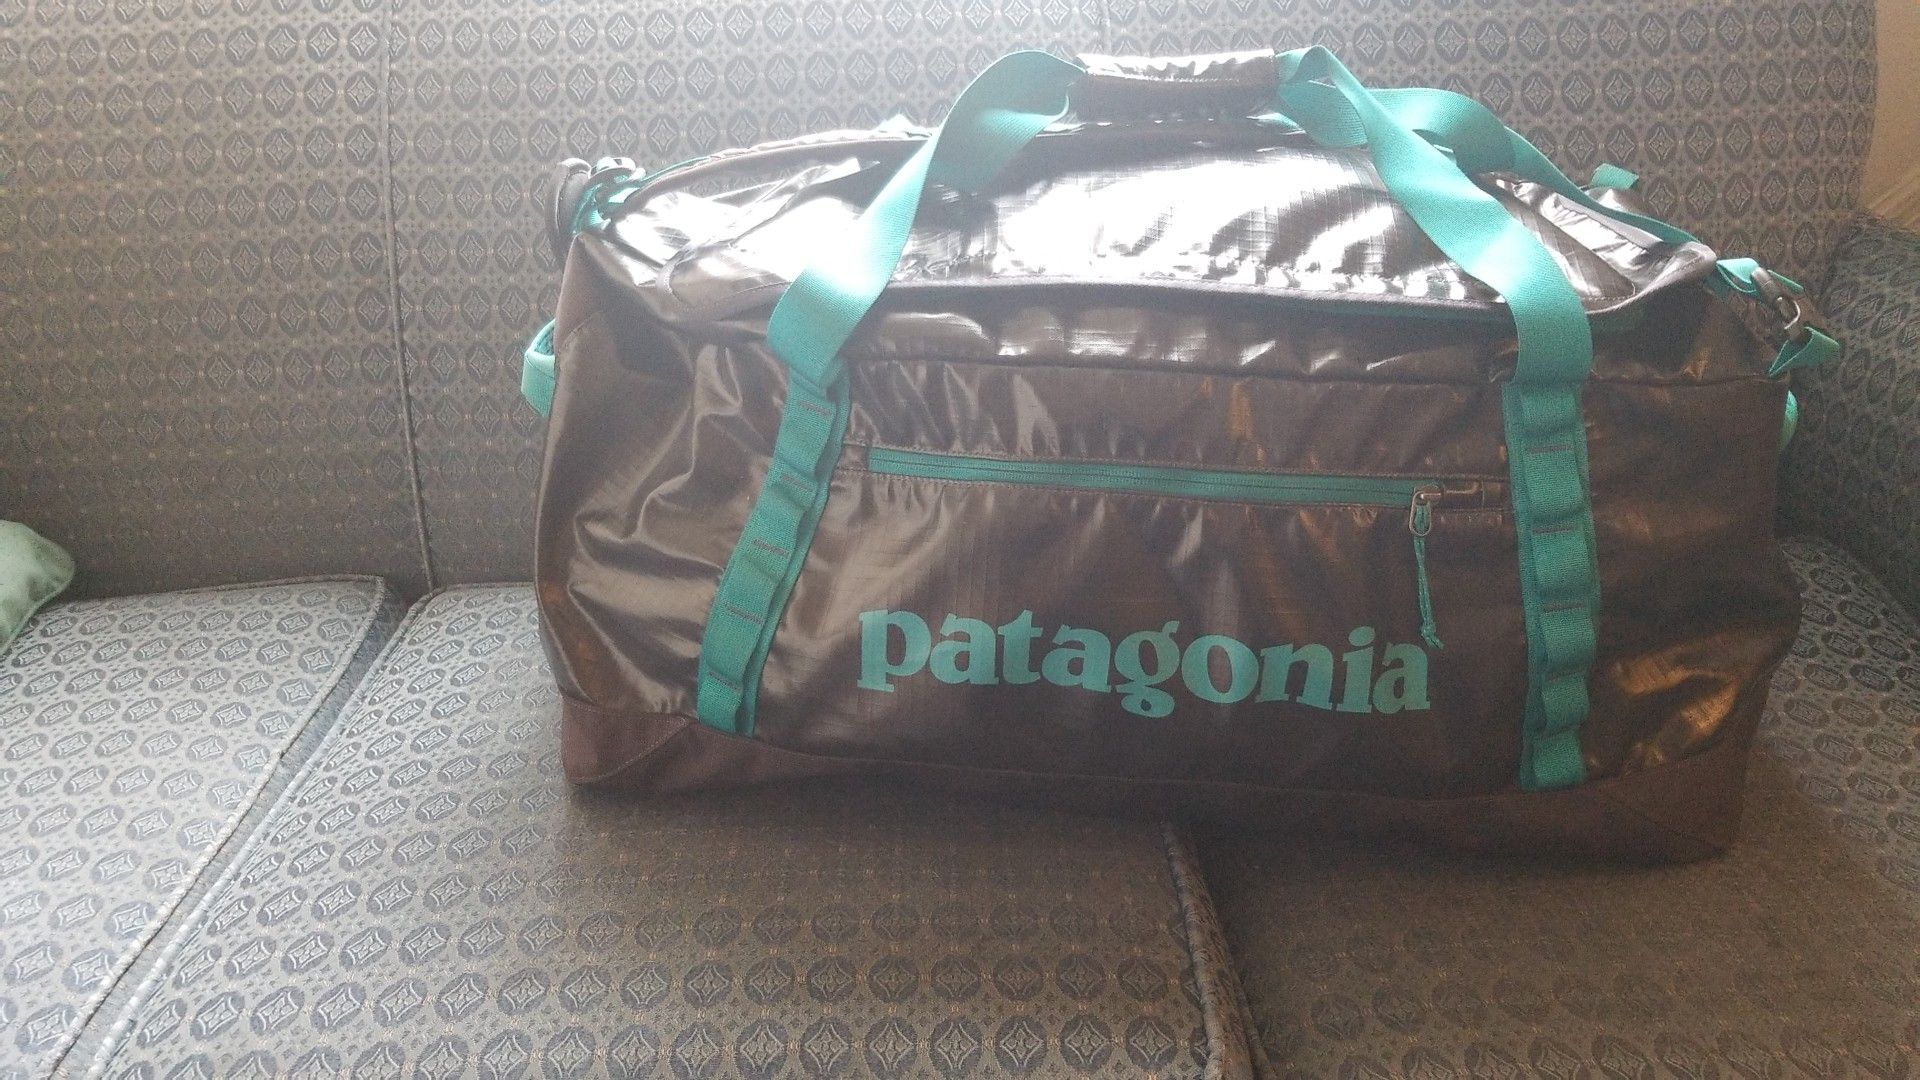 Large Patagonia duffle bag